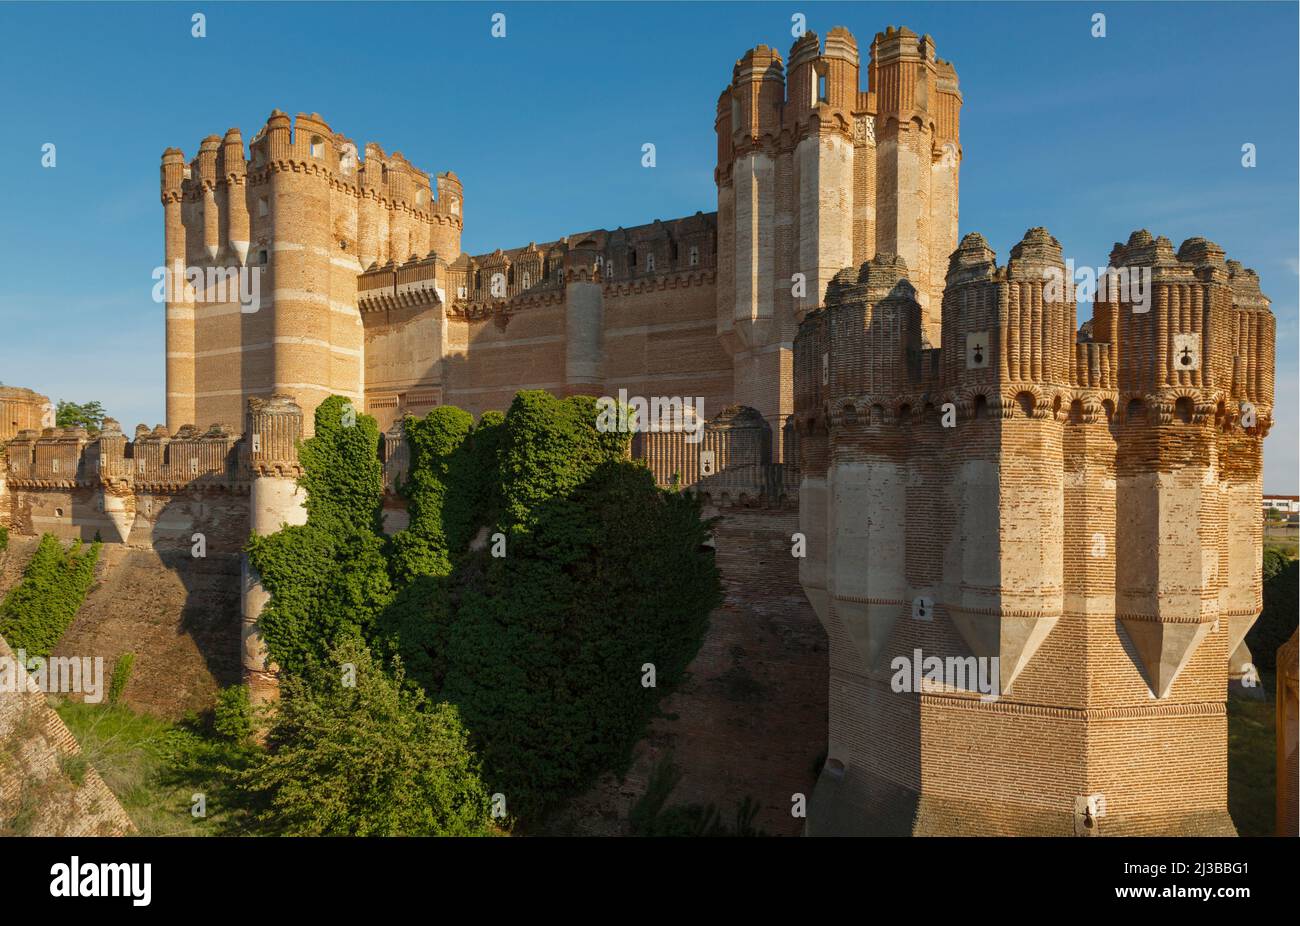 Coca, Provincia di Segovia, Castiglia e Leon, Spagna. Castillo de Coca. Castello di Coca. Esempio importante di architettura militare Mudéjar. Il castello era Foto Stock